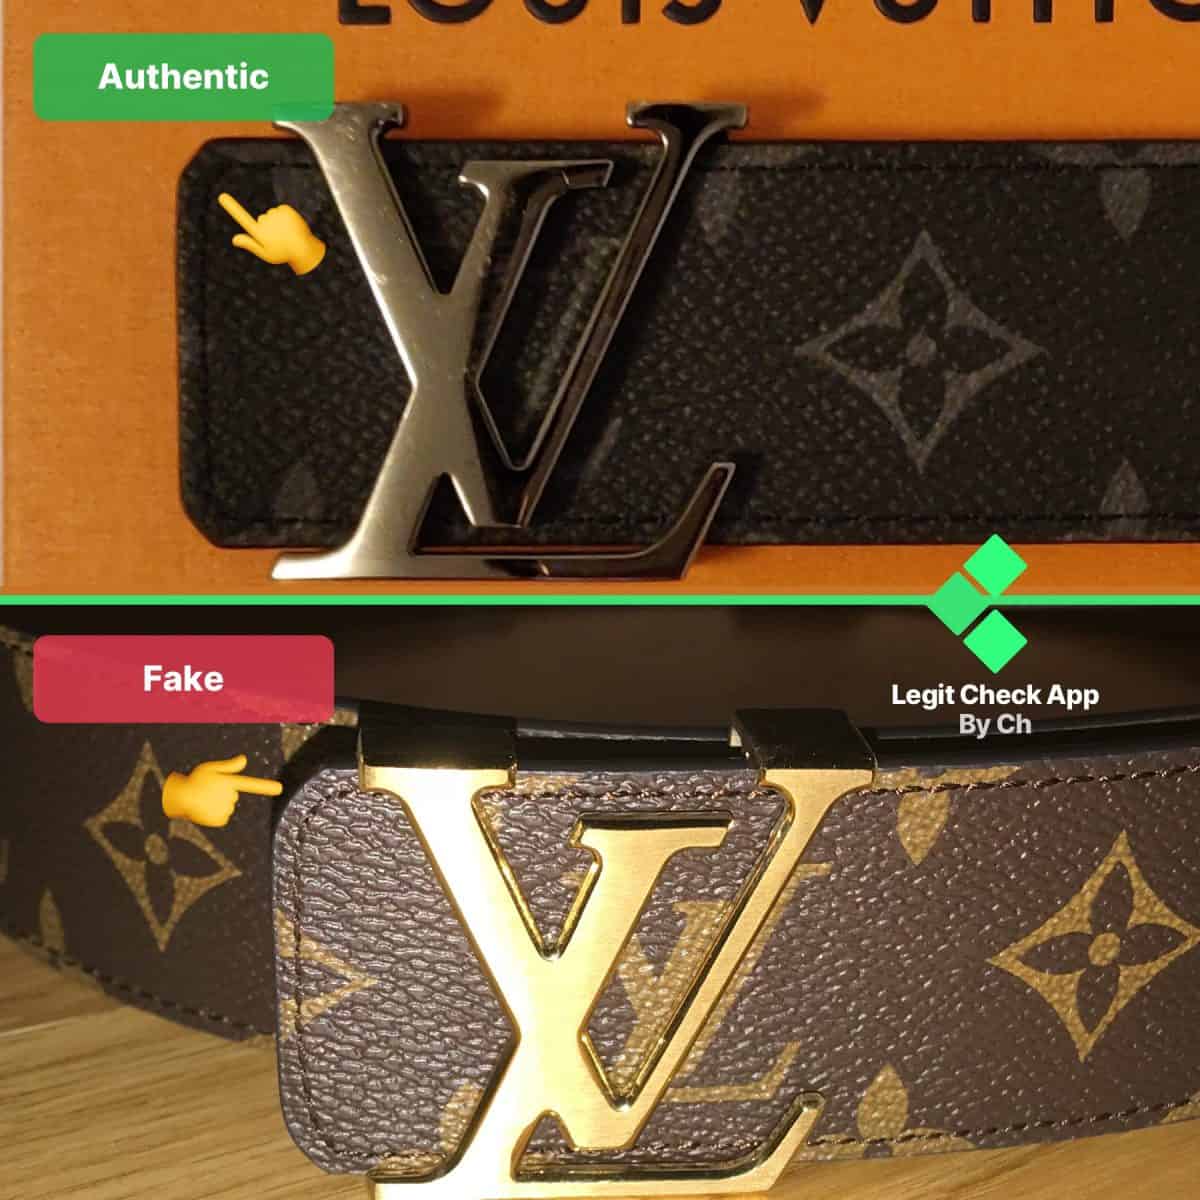 Louis Vuitton Belt - Real vs. Fake Comparison 